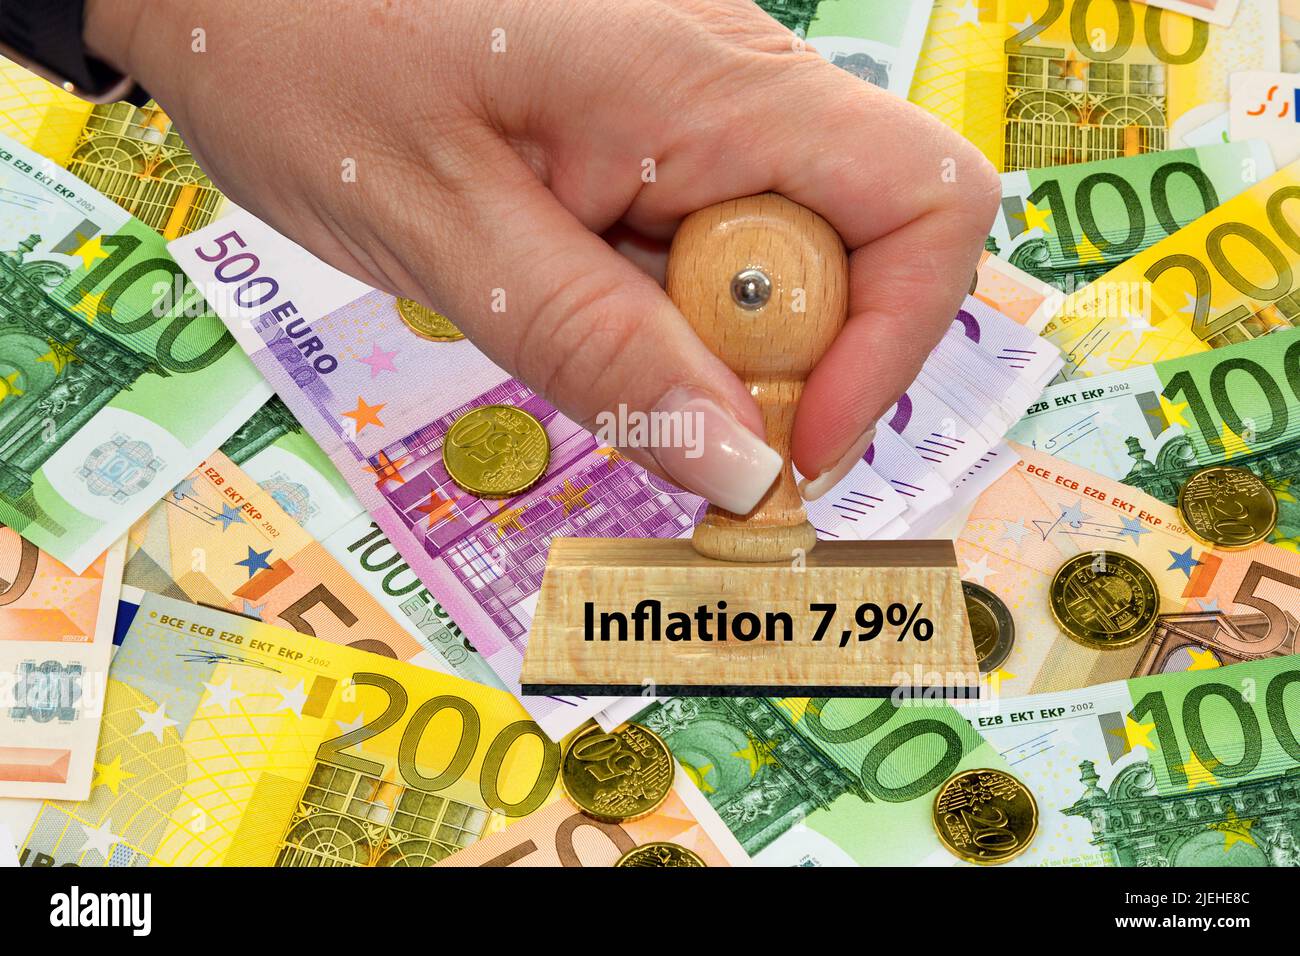 Viele verschiedene Euro-Banknoten und Münzen der Europäischen Union, Inflation, Mai 202, 7,9%, Stock Photo